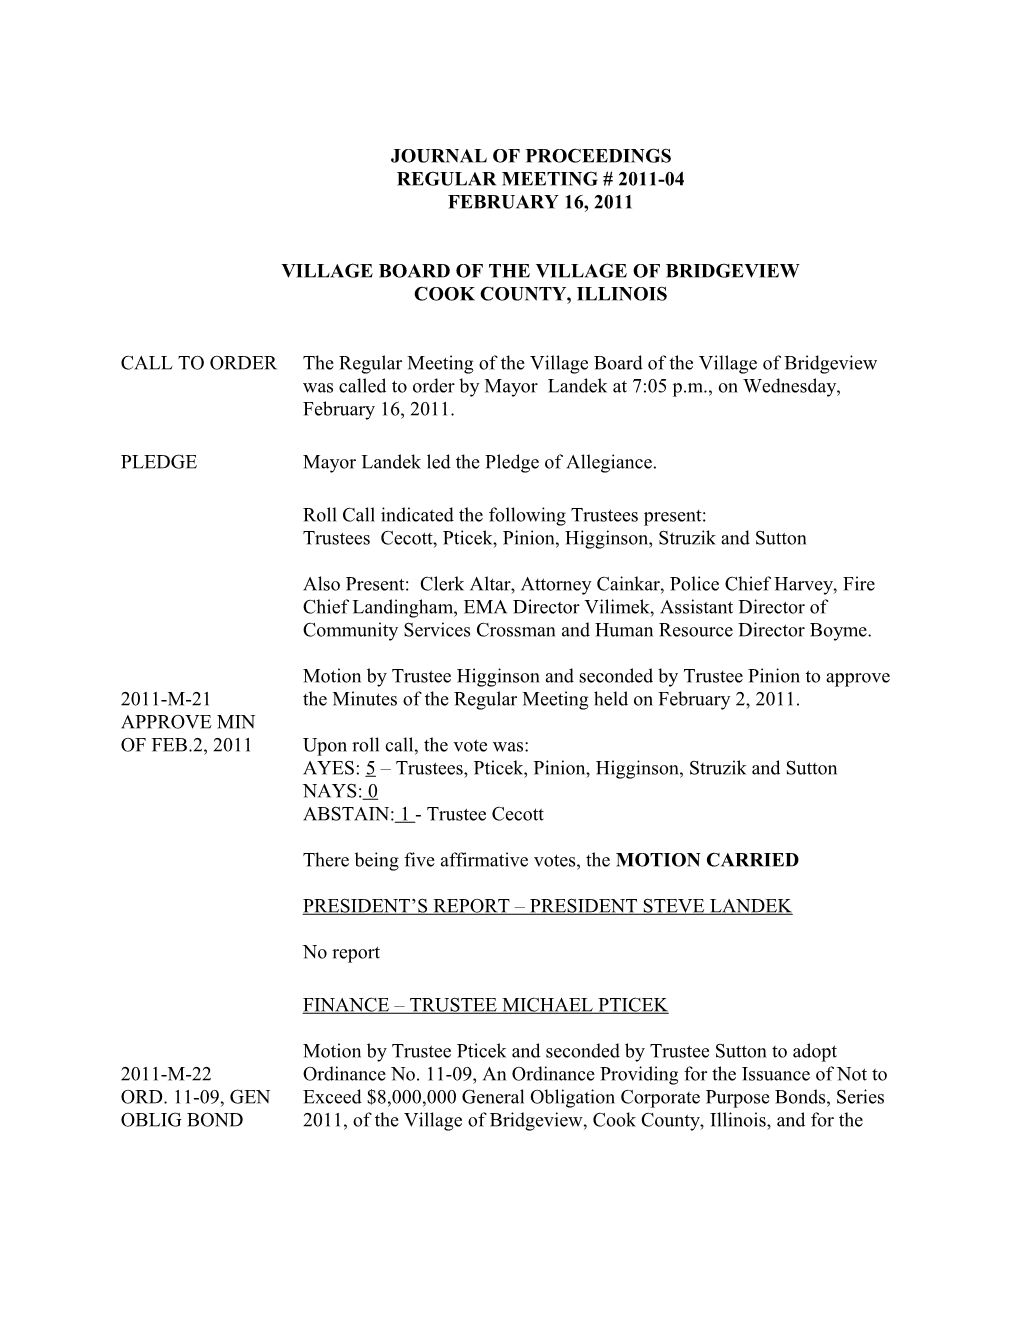 Journal of Proceedings Regular Meeting # 2011-04